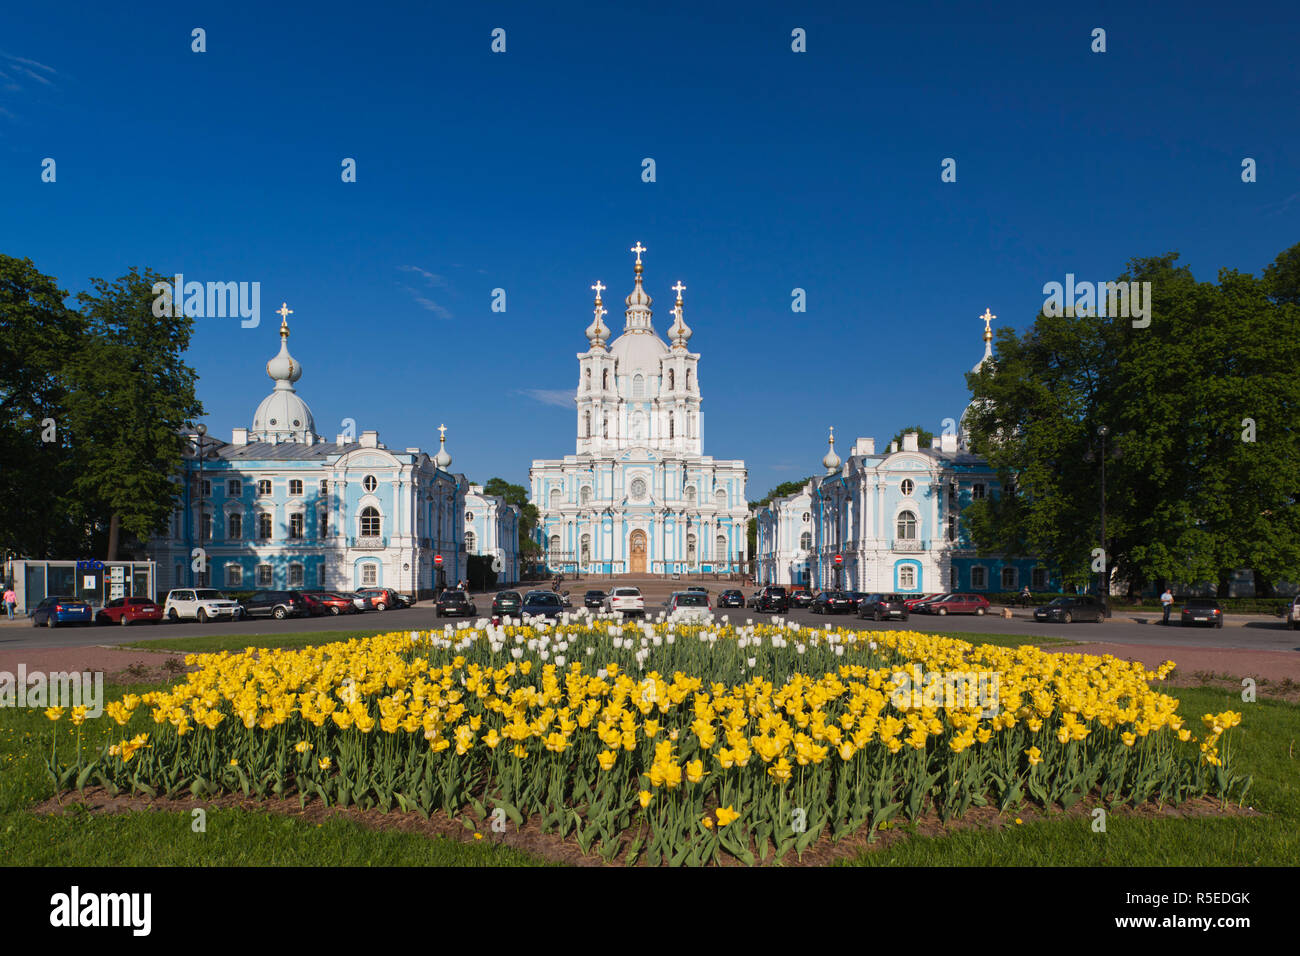 La Russie, Saint-Pétersbourg, Smolny, cathédrale de Smolny Banque D'Images